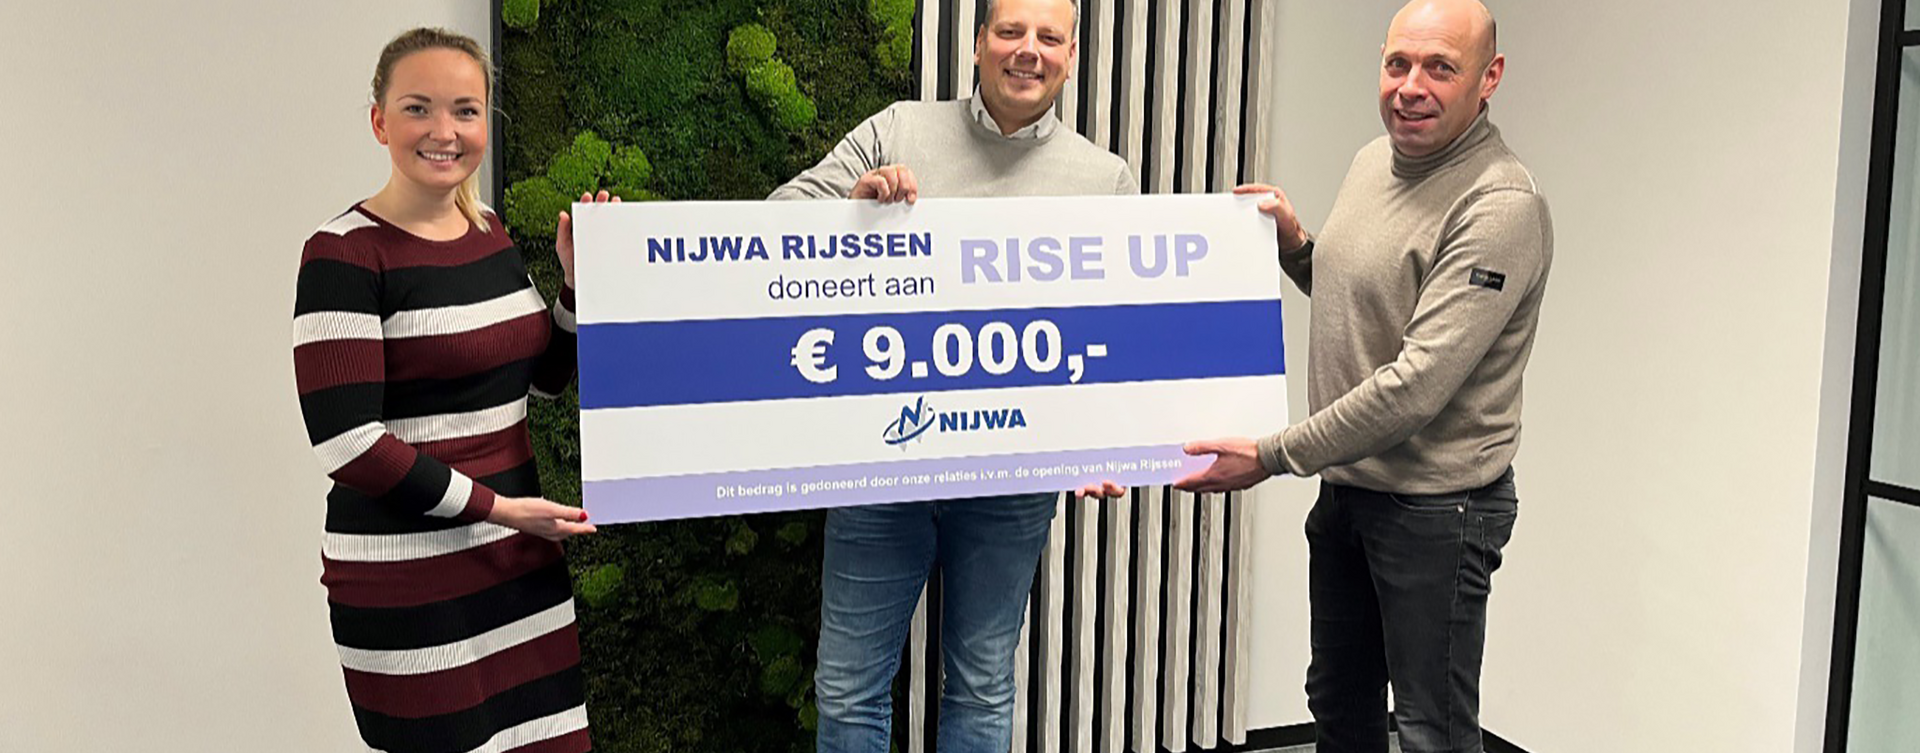 Nijwa omarmt Stichting Rise Up tijdens opening en doneert € 9.000,-